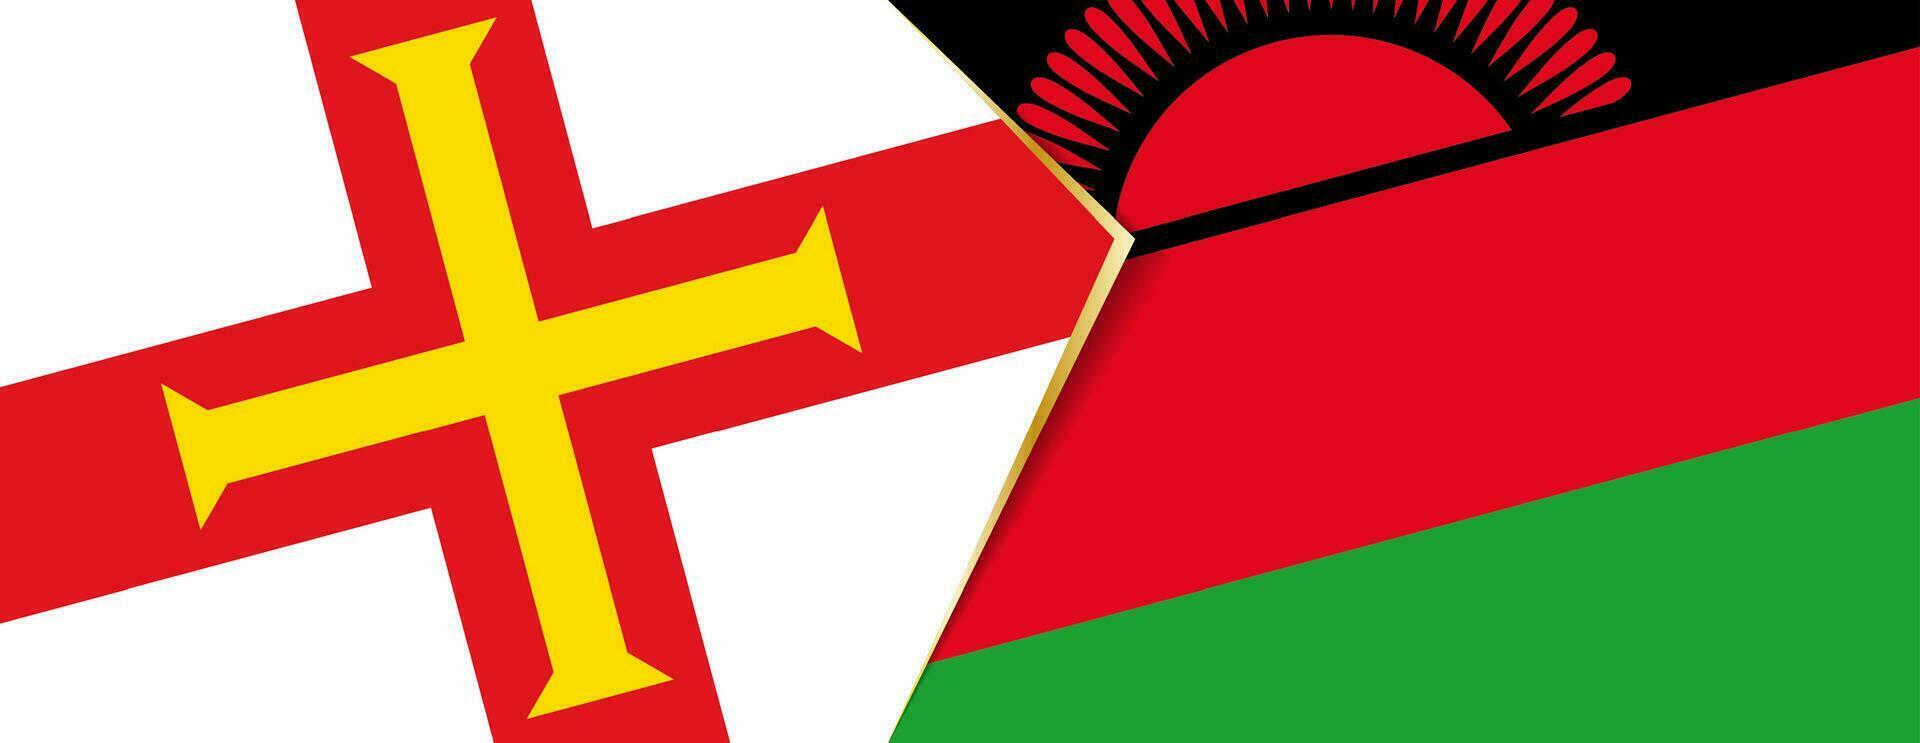 Guernsey und Malawi Flaggen, zwei Vektor Flaggen.